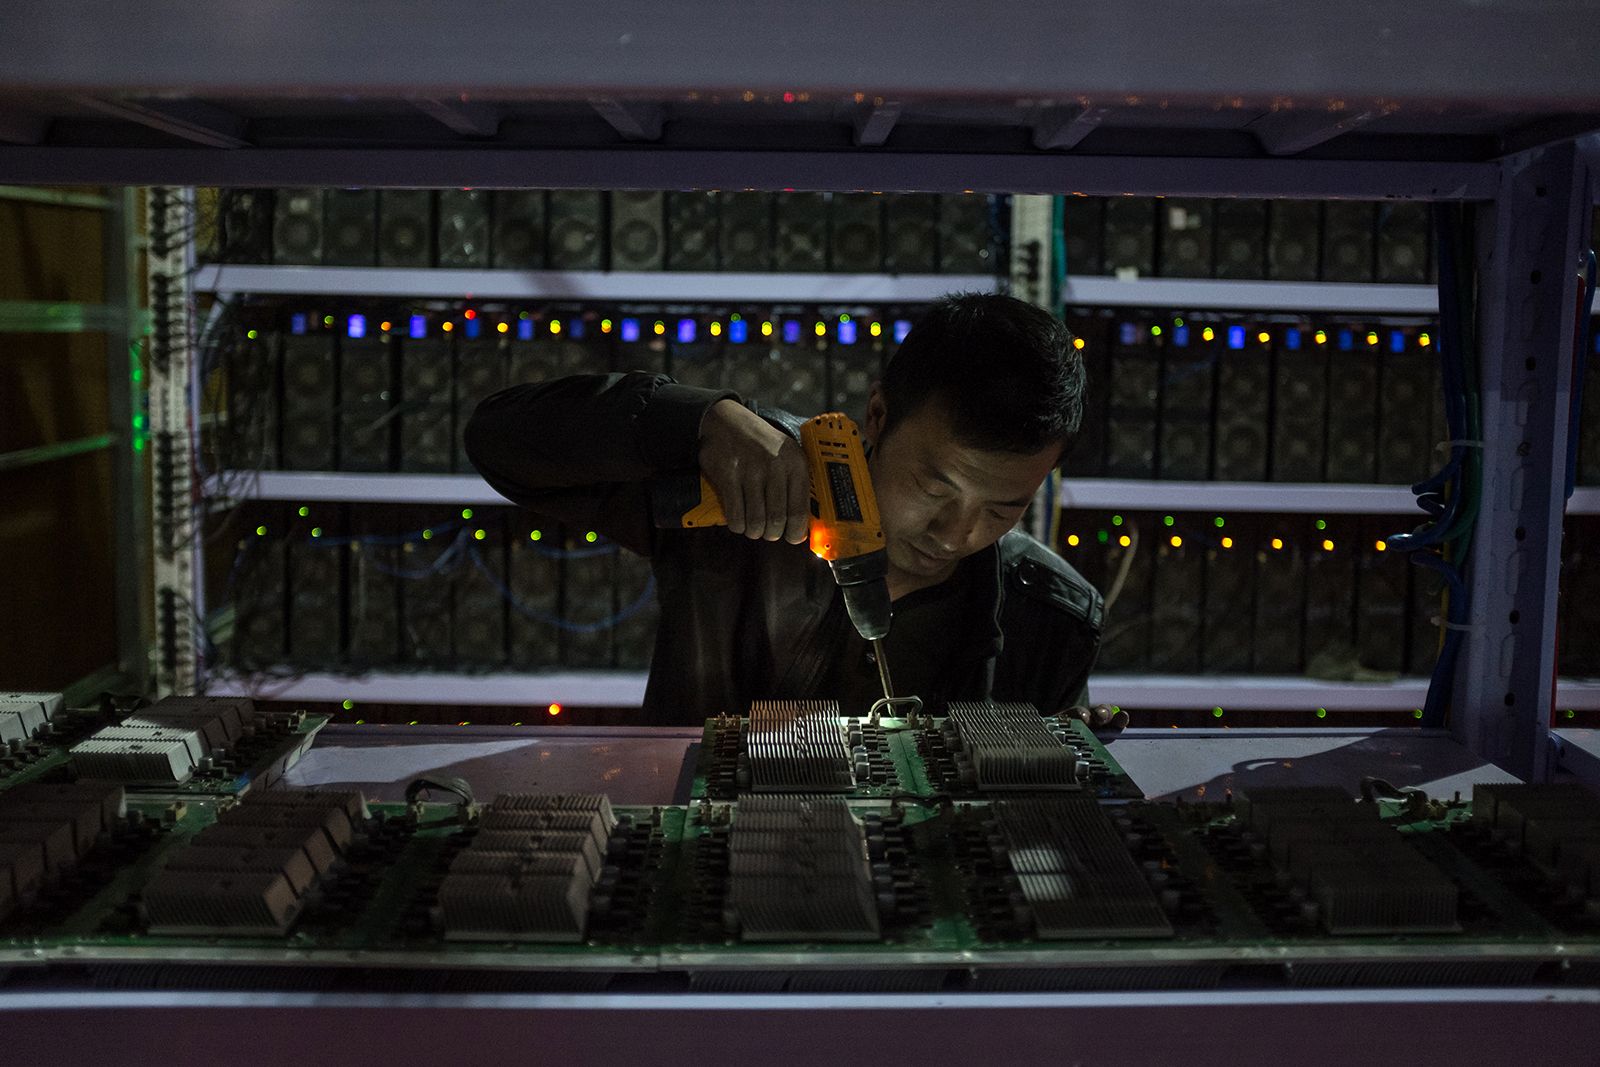  Một nhân viên lắp ráp bảng tính tại khu khai thác mỏ ở tỉnh Tứ Xuyên 